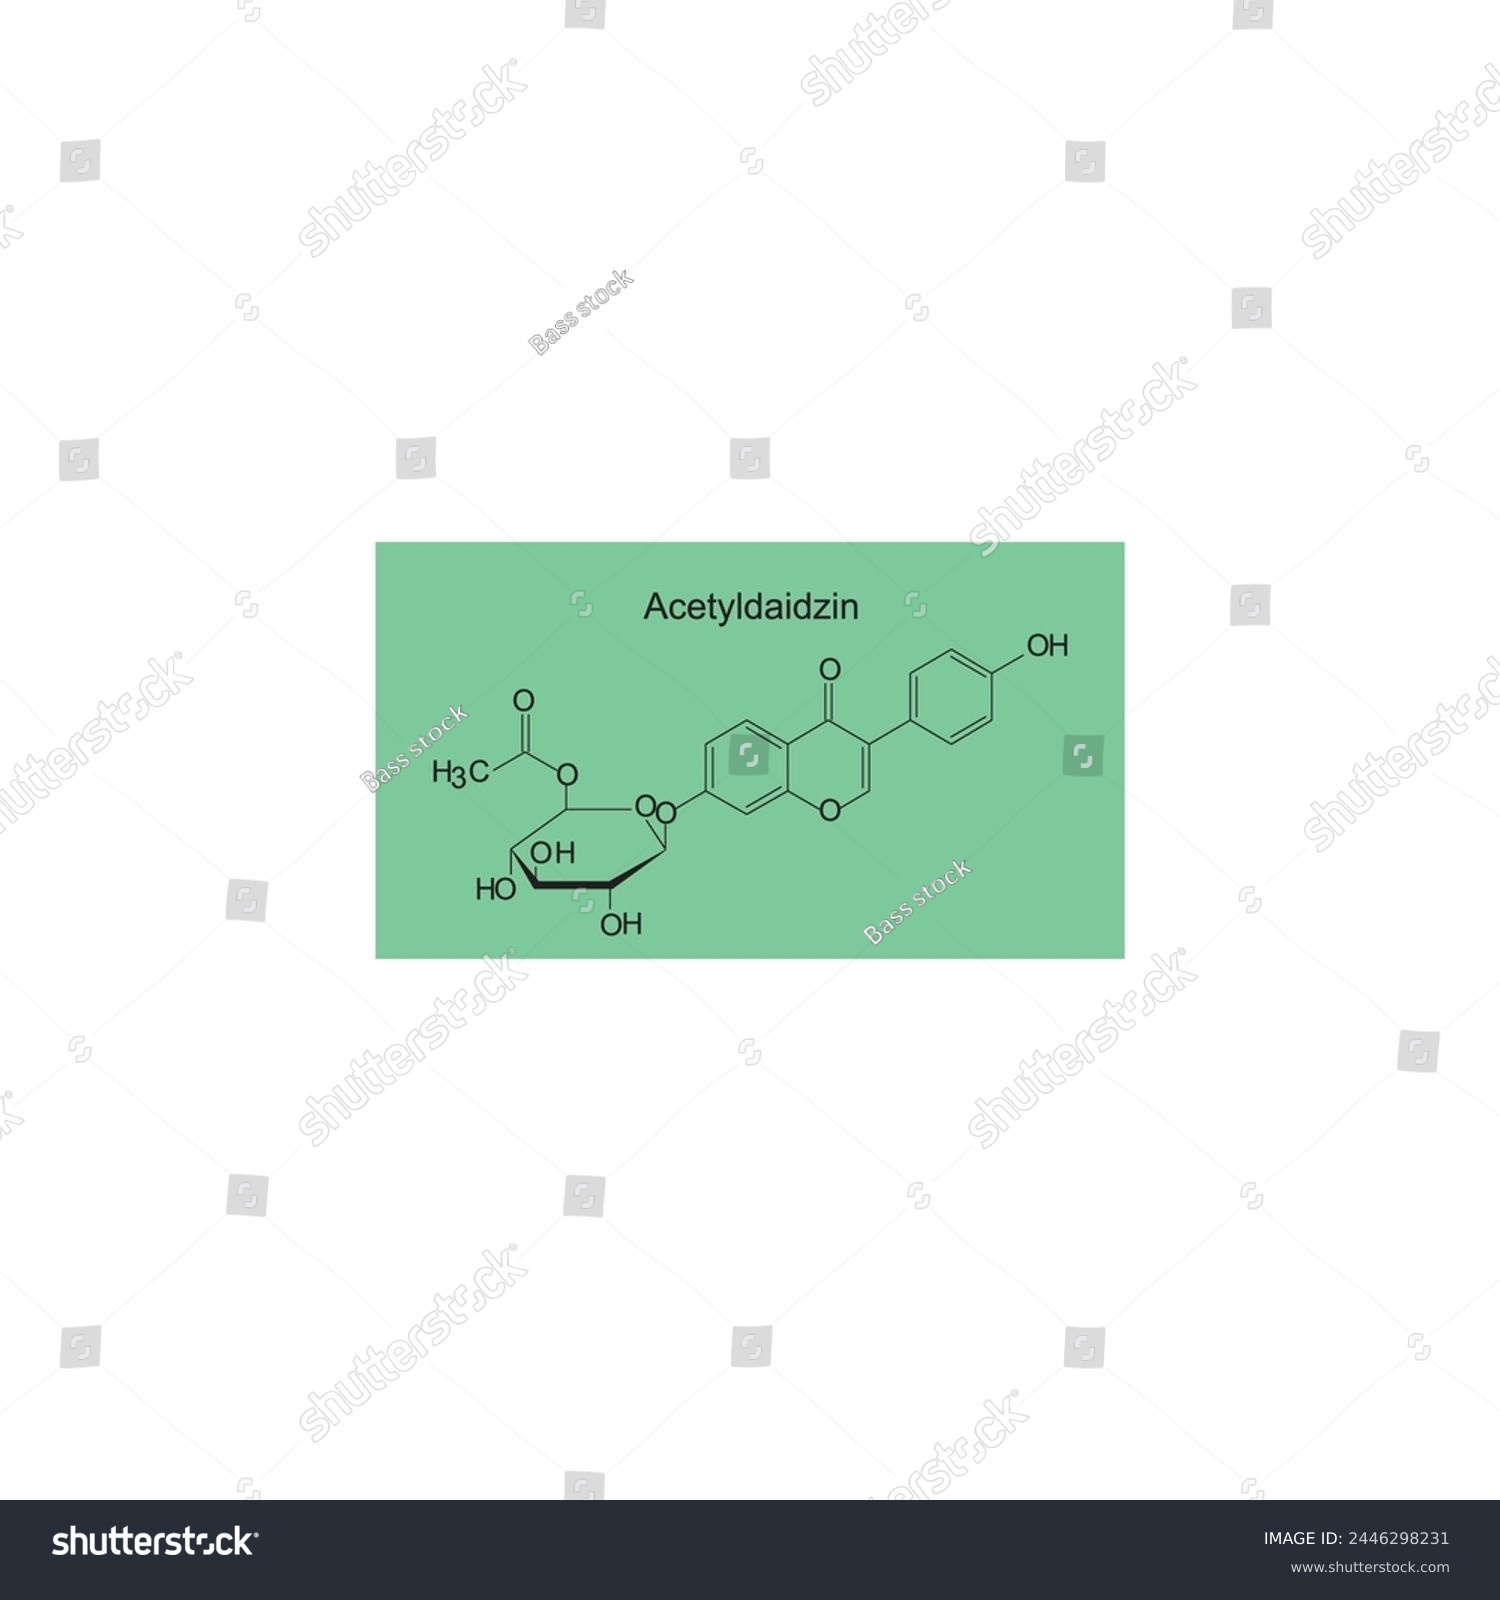 SVG of Acetyldaidzin skeletal structure diagram.Isoflavanone compound molecule scientific illustration on green background. svg